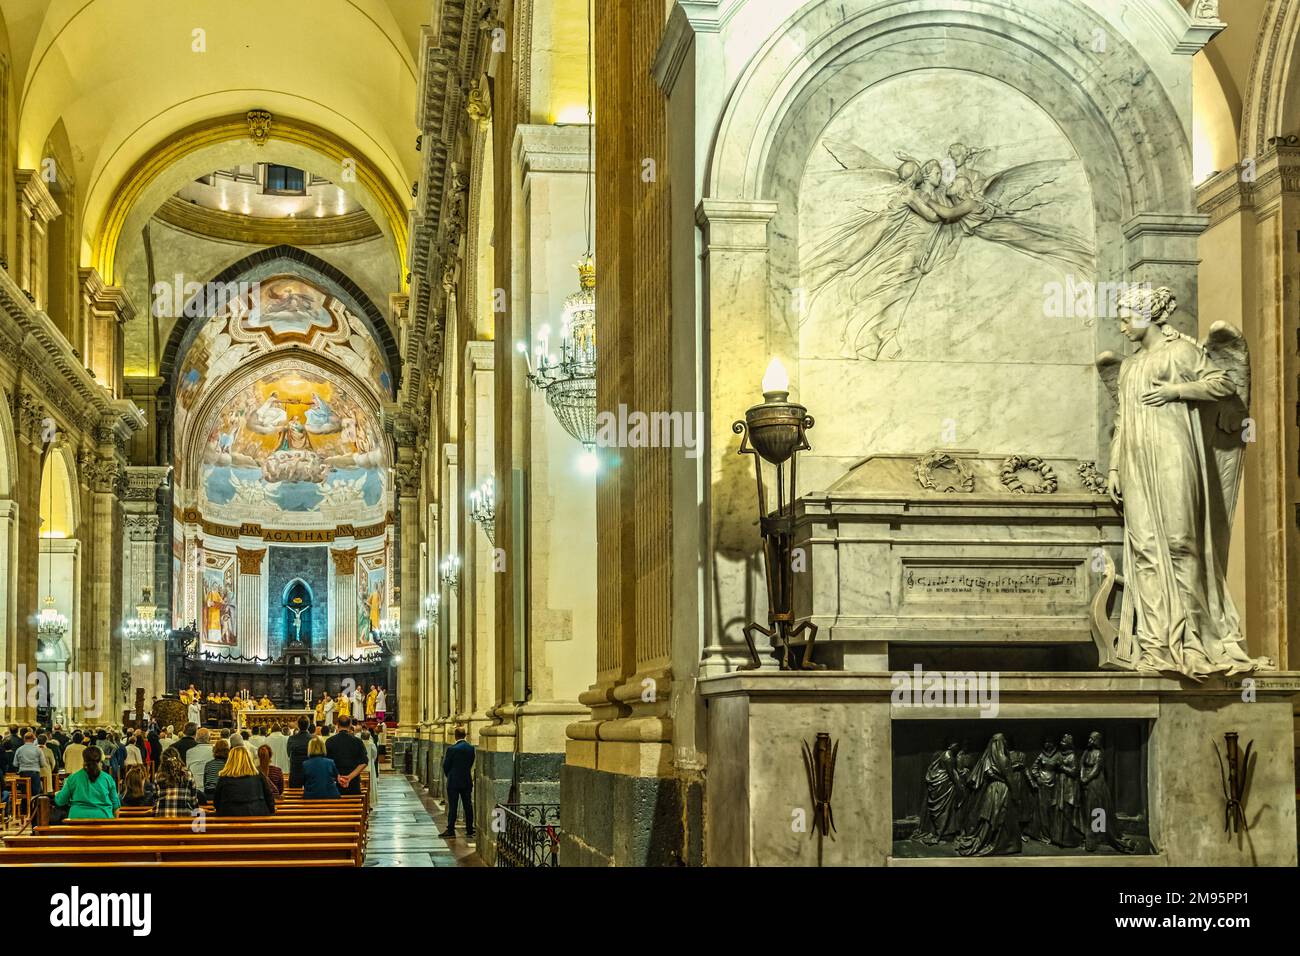 Kathedrale von Catania, das Grab von Vincenzo Bellini, berühmter Komponist und Bürger von Catania und das zentrale Schiff. Catania, Sizilien, Italien, Europa Stockfoto